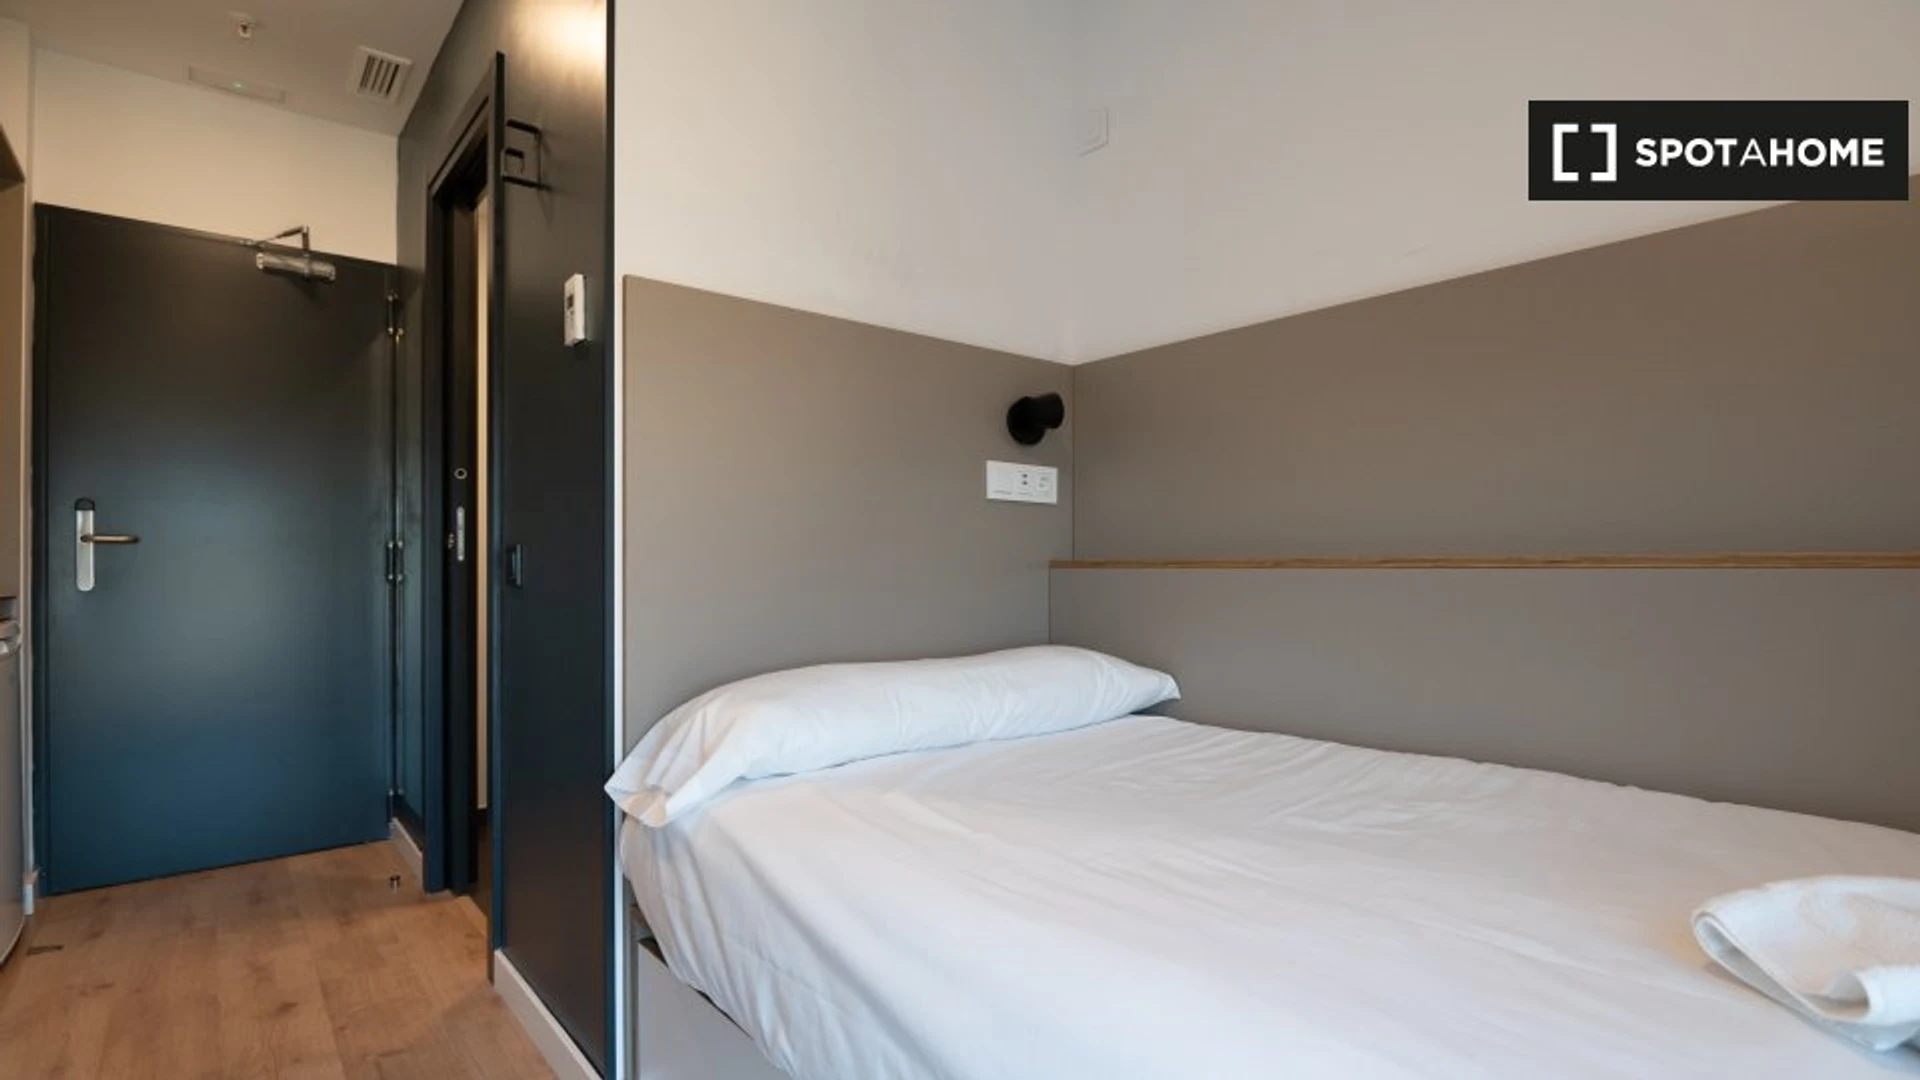 Pokój do wynajęcia z podwójnym łóżkiem w Malaga